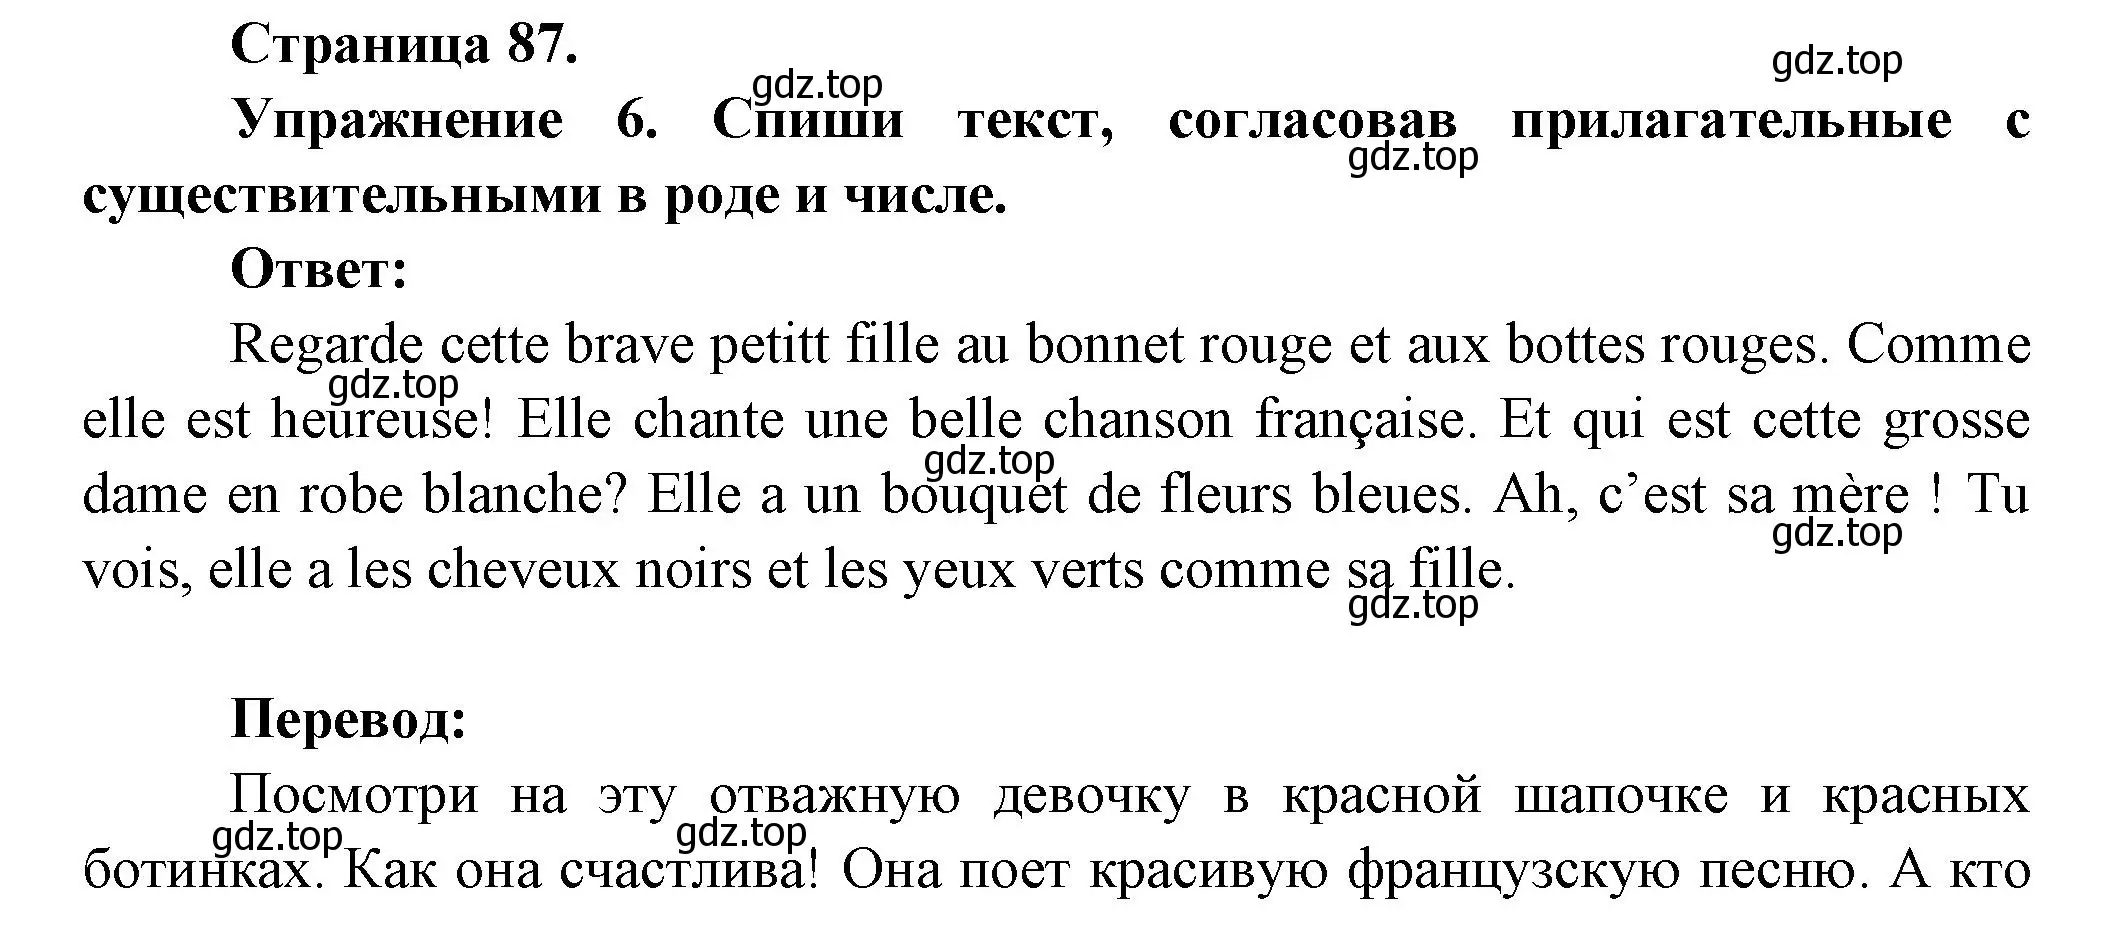 Решение номер 6 (страница 87) гдз по французскому языку 5 класс Береговская, Белосельская, учебник 1 часть